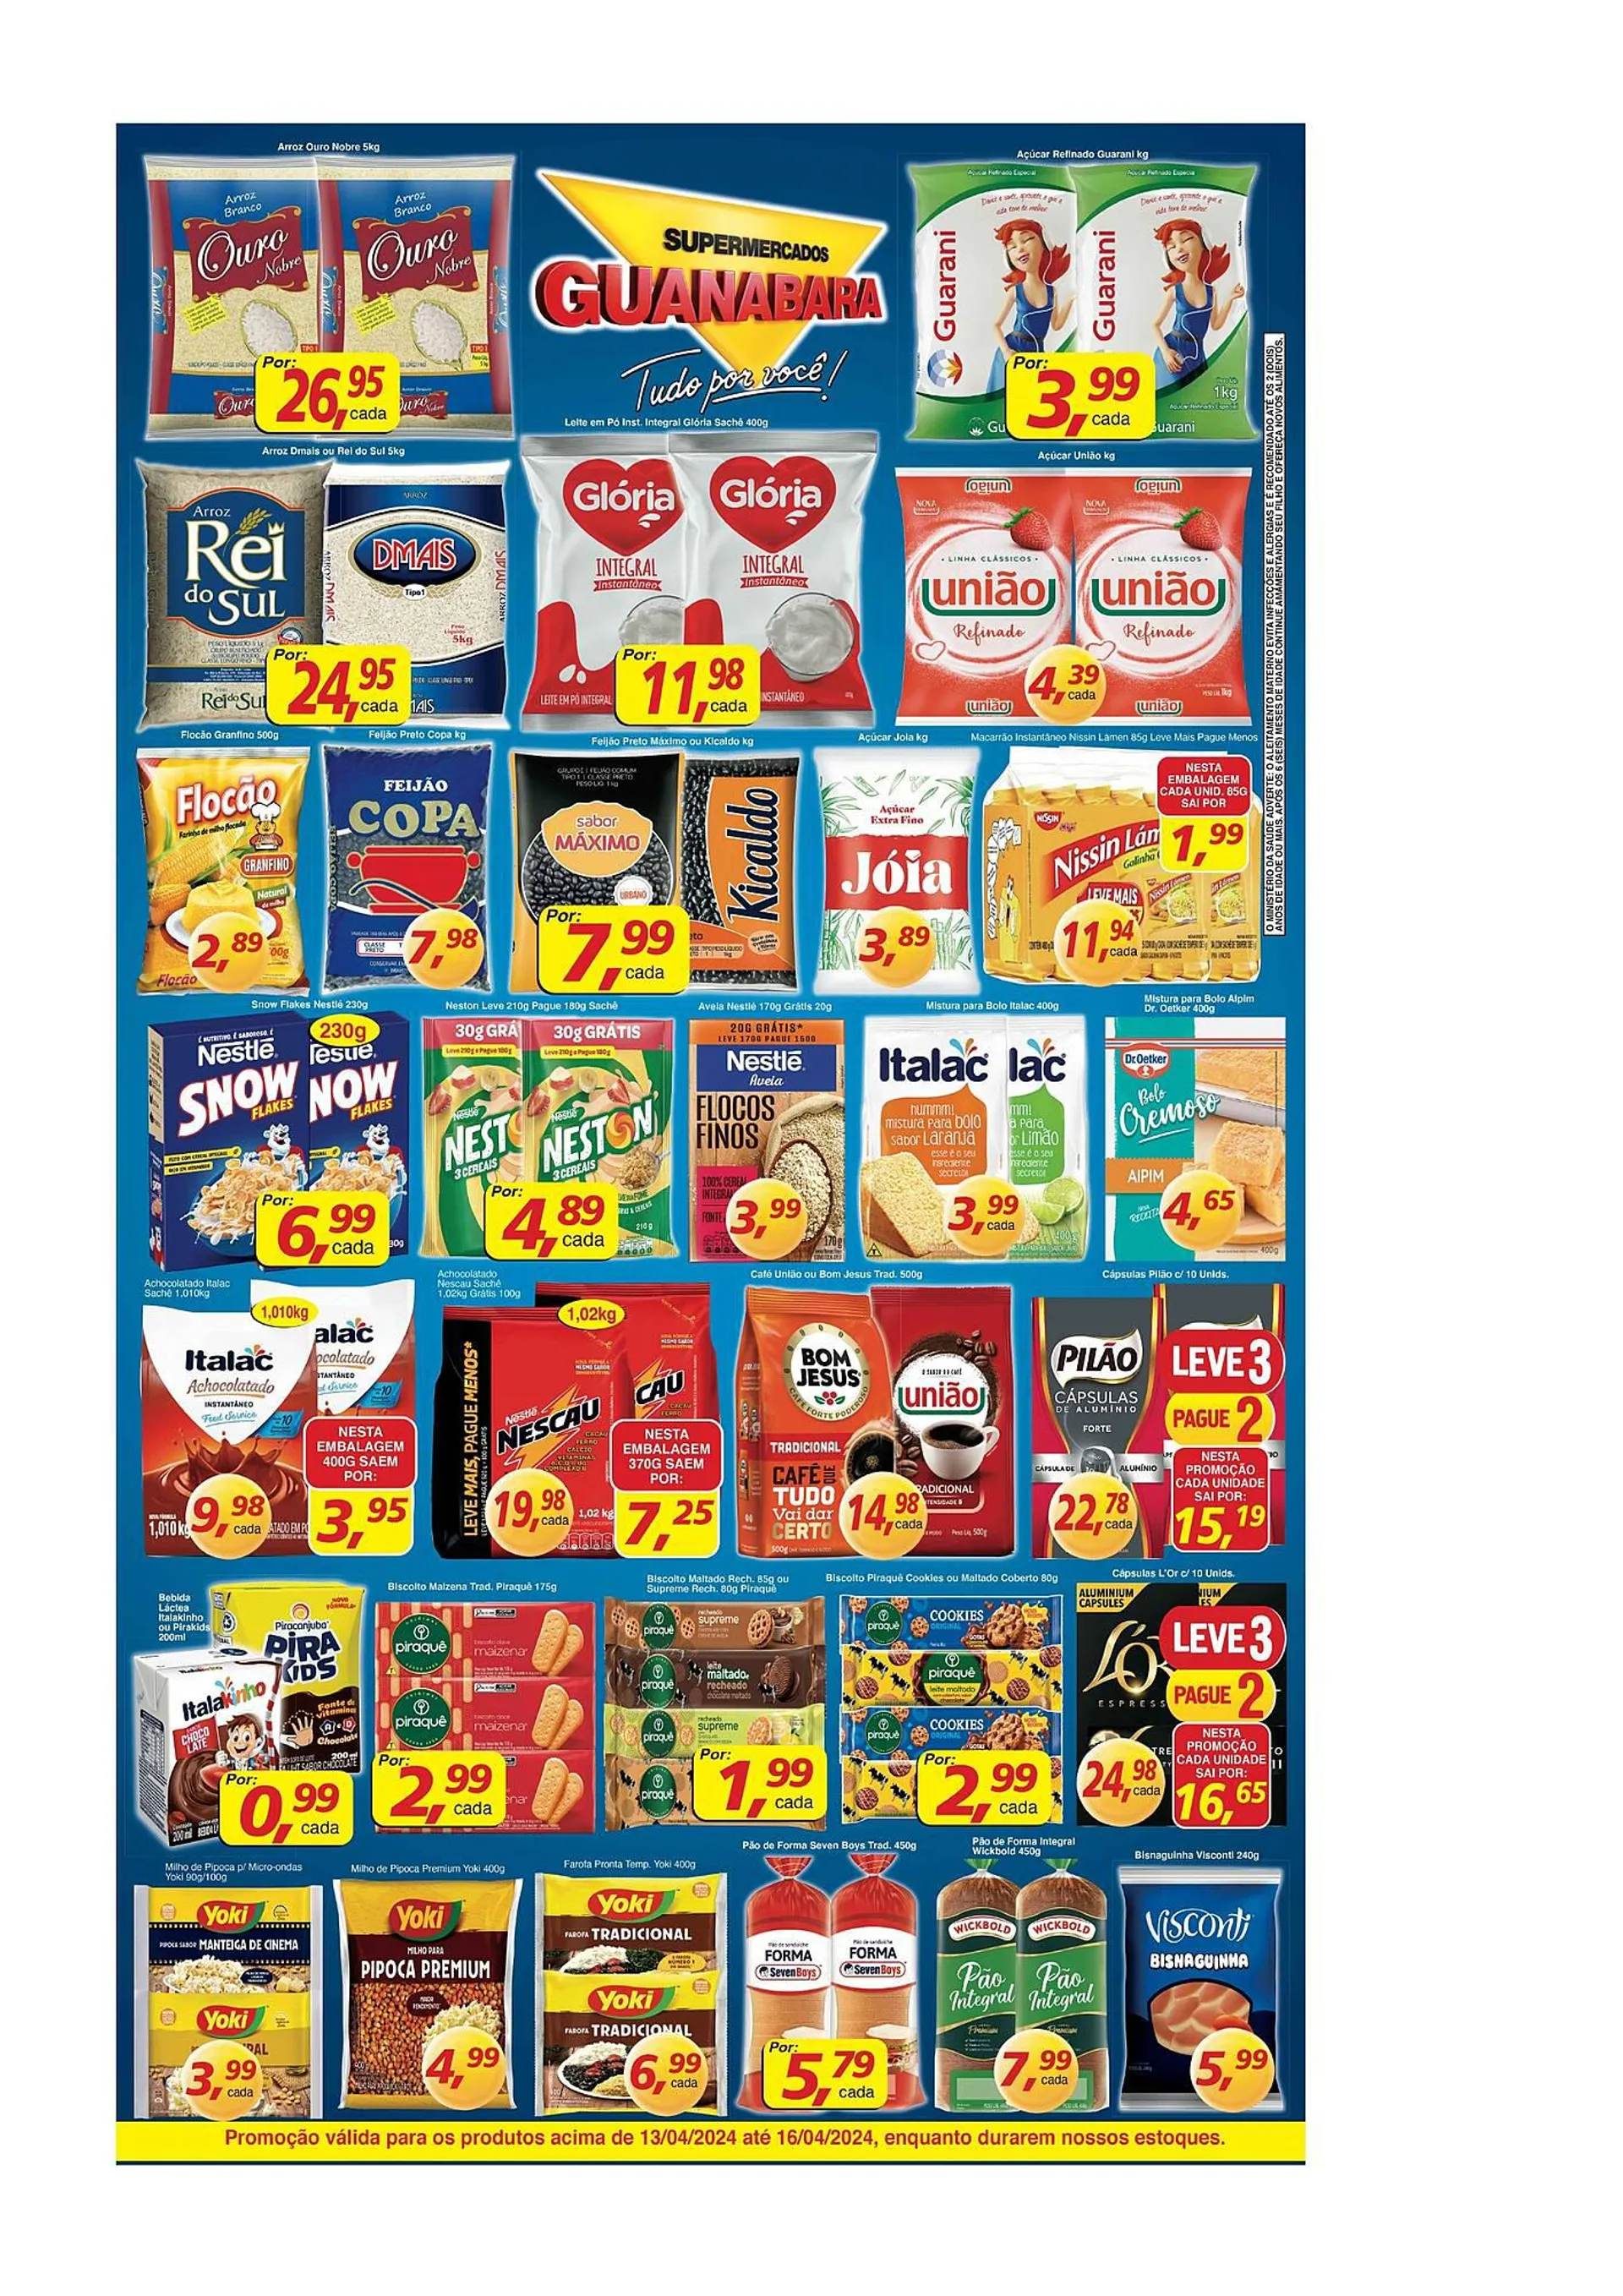 Encarte de Catálogo Supermercados Guanabara 13 de abril até 16 de abril 2024 - Pagina 2